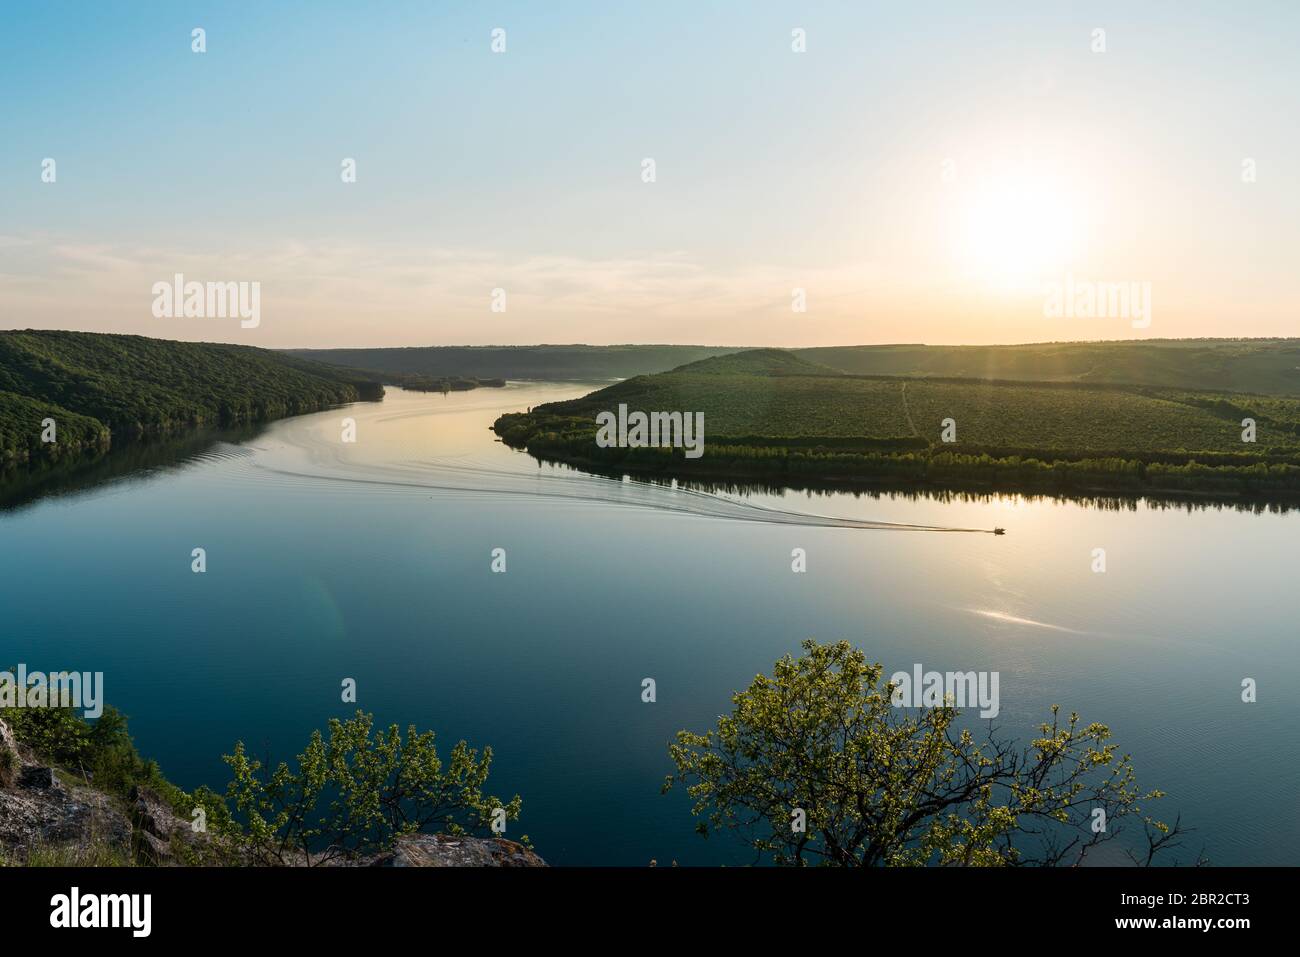 Panorama di un fiume tortuoso con un motoscafo galleggiante Foto Stock